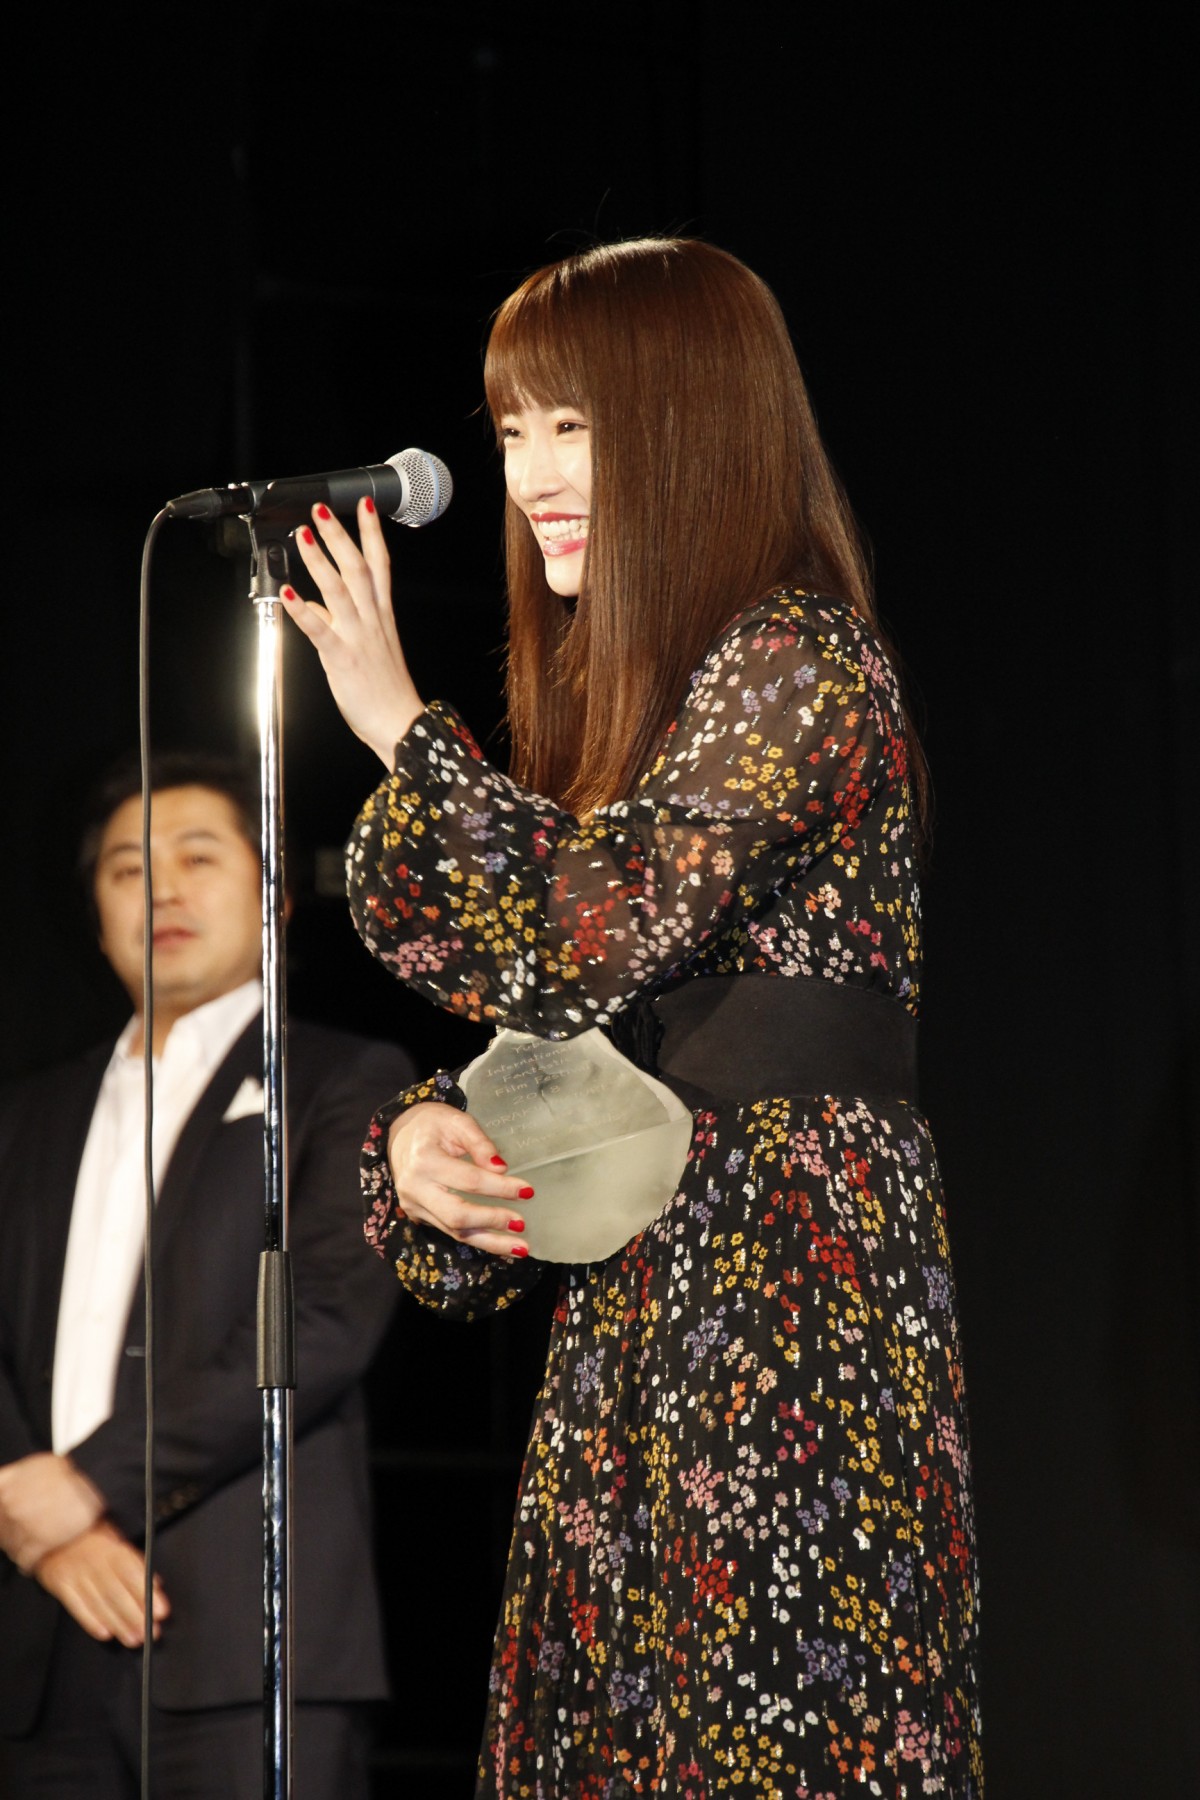 川栄李奈、“女優”として初の表彰に「感謝を忘れず頑張りたい」と歓喜